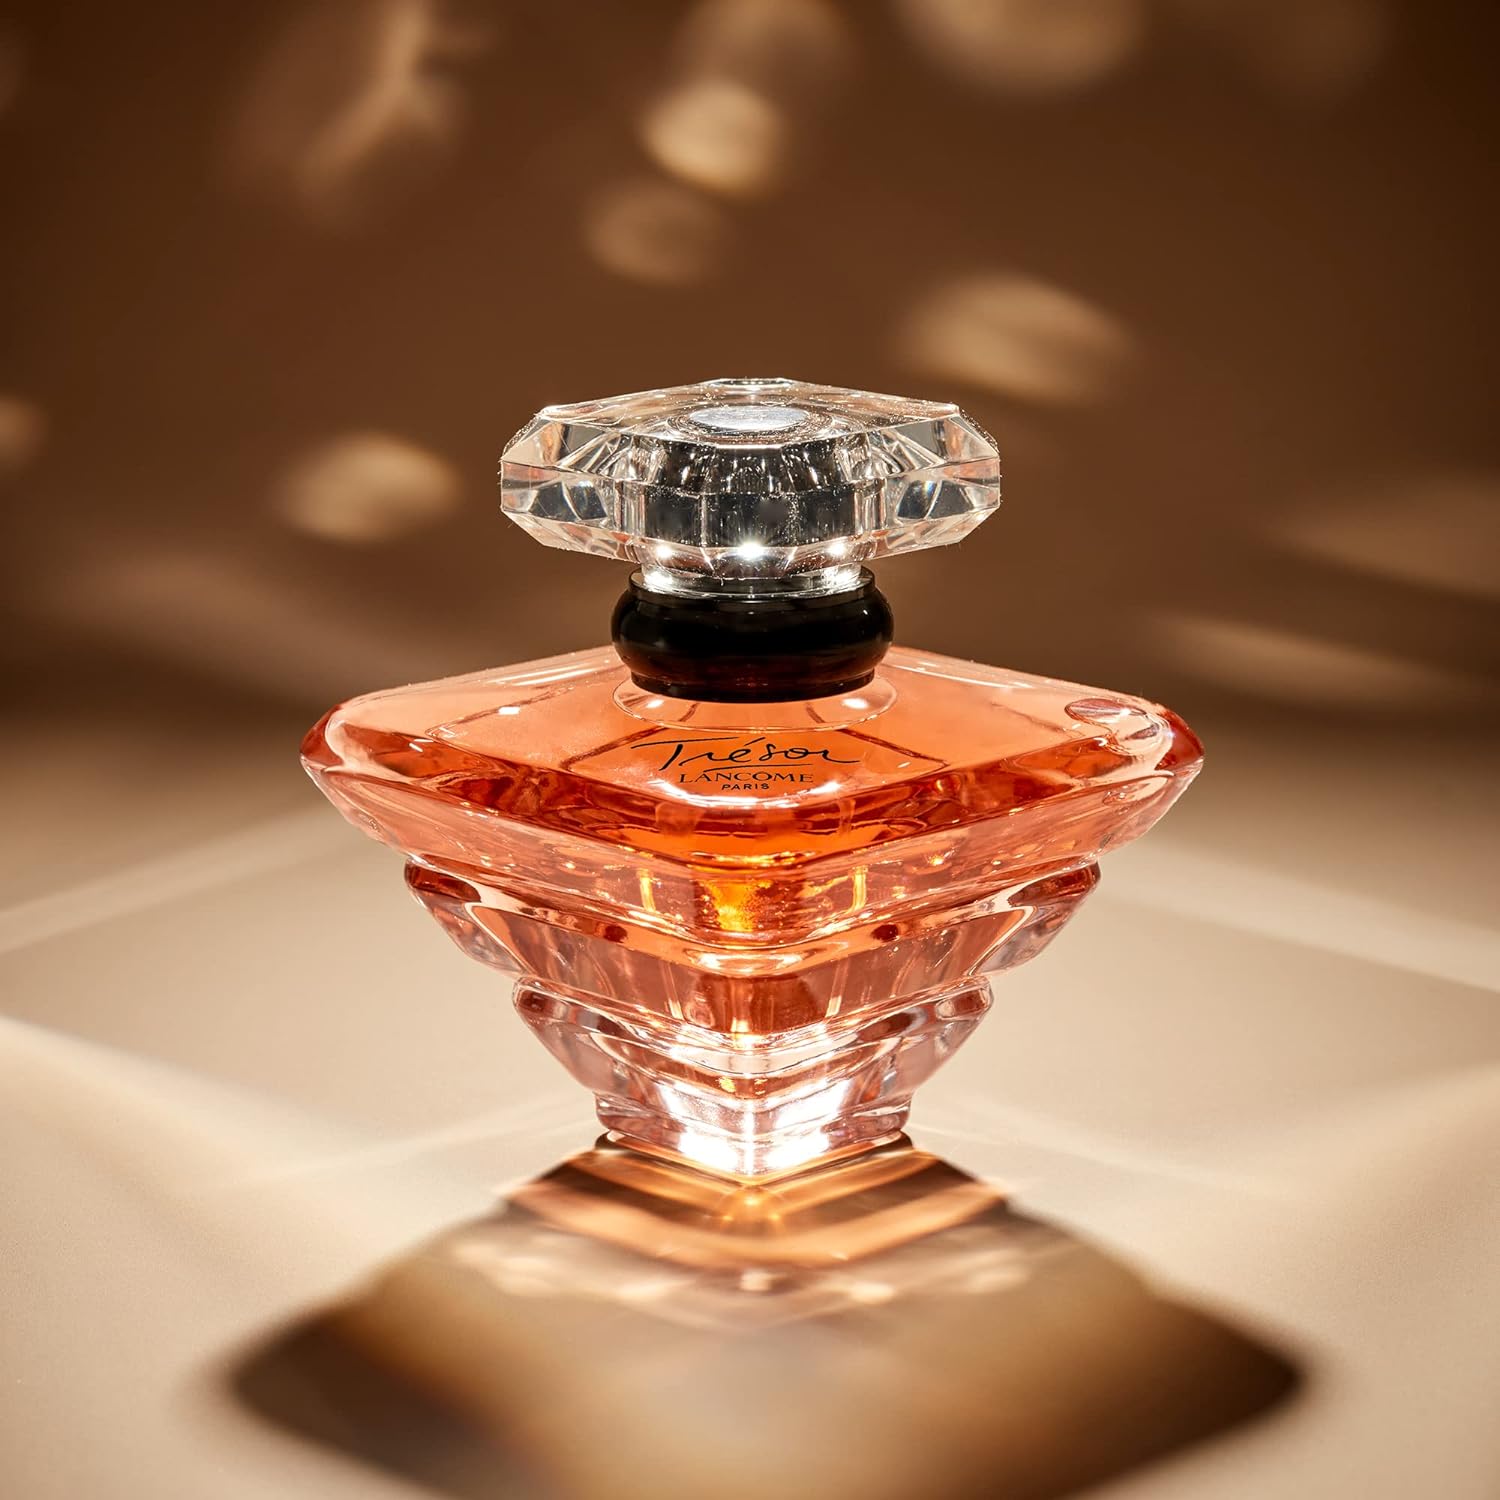 Lancôme Trésor Eau de Parfum - Long Lasting Fragrance with Notes of Rose, Lilac, Peach & Apricot Blossom - Elegant & Romantic Women's Perfume - 3.4 Fl Oz : Beauty & Personal Care